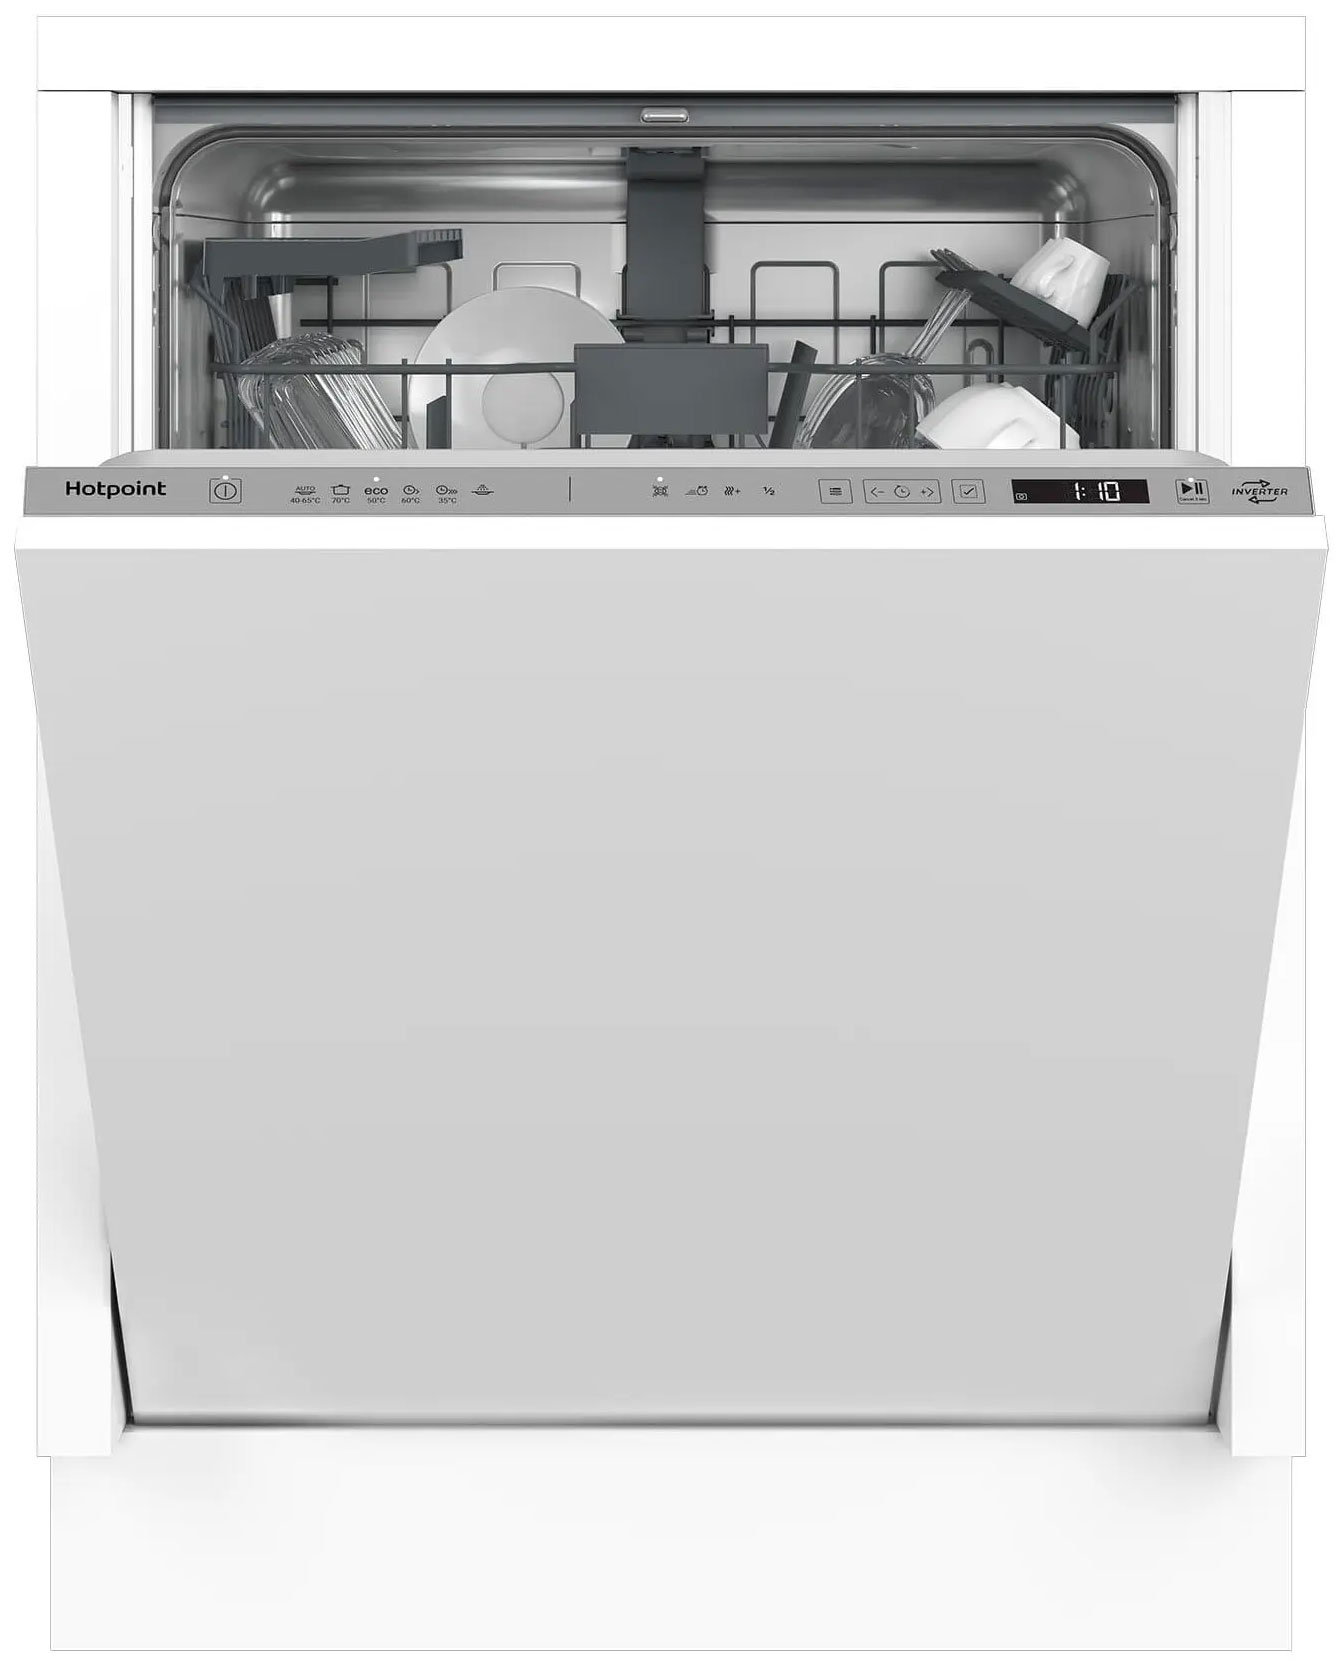 Встраиваемая посудомоечная машина Hotpoint HI 4D66 DW встраиваемая посудомоечная машина hotpoint his 1c69